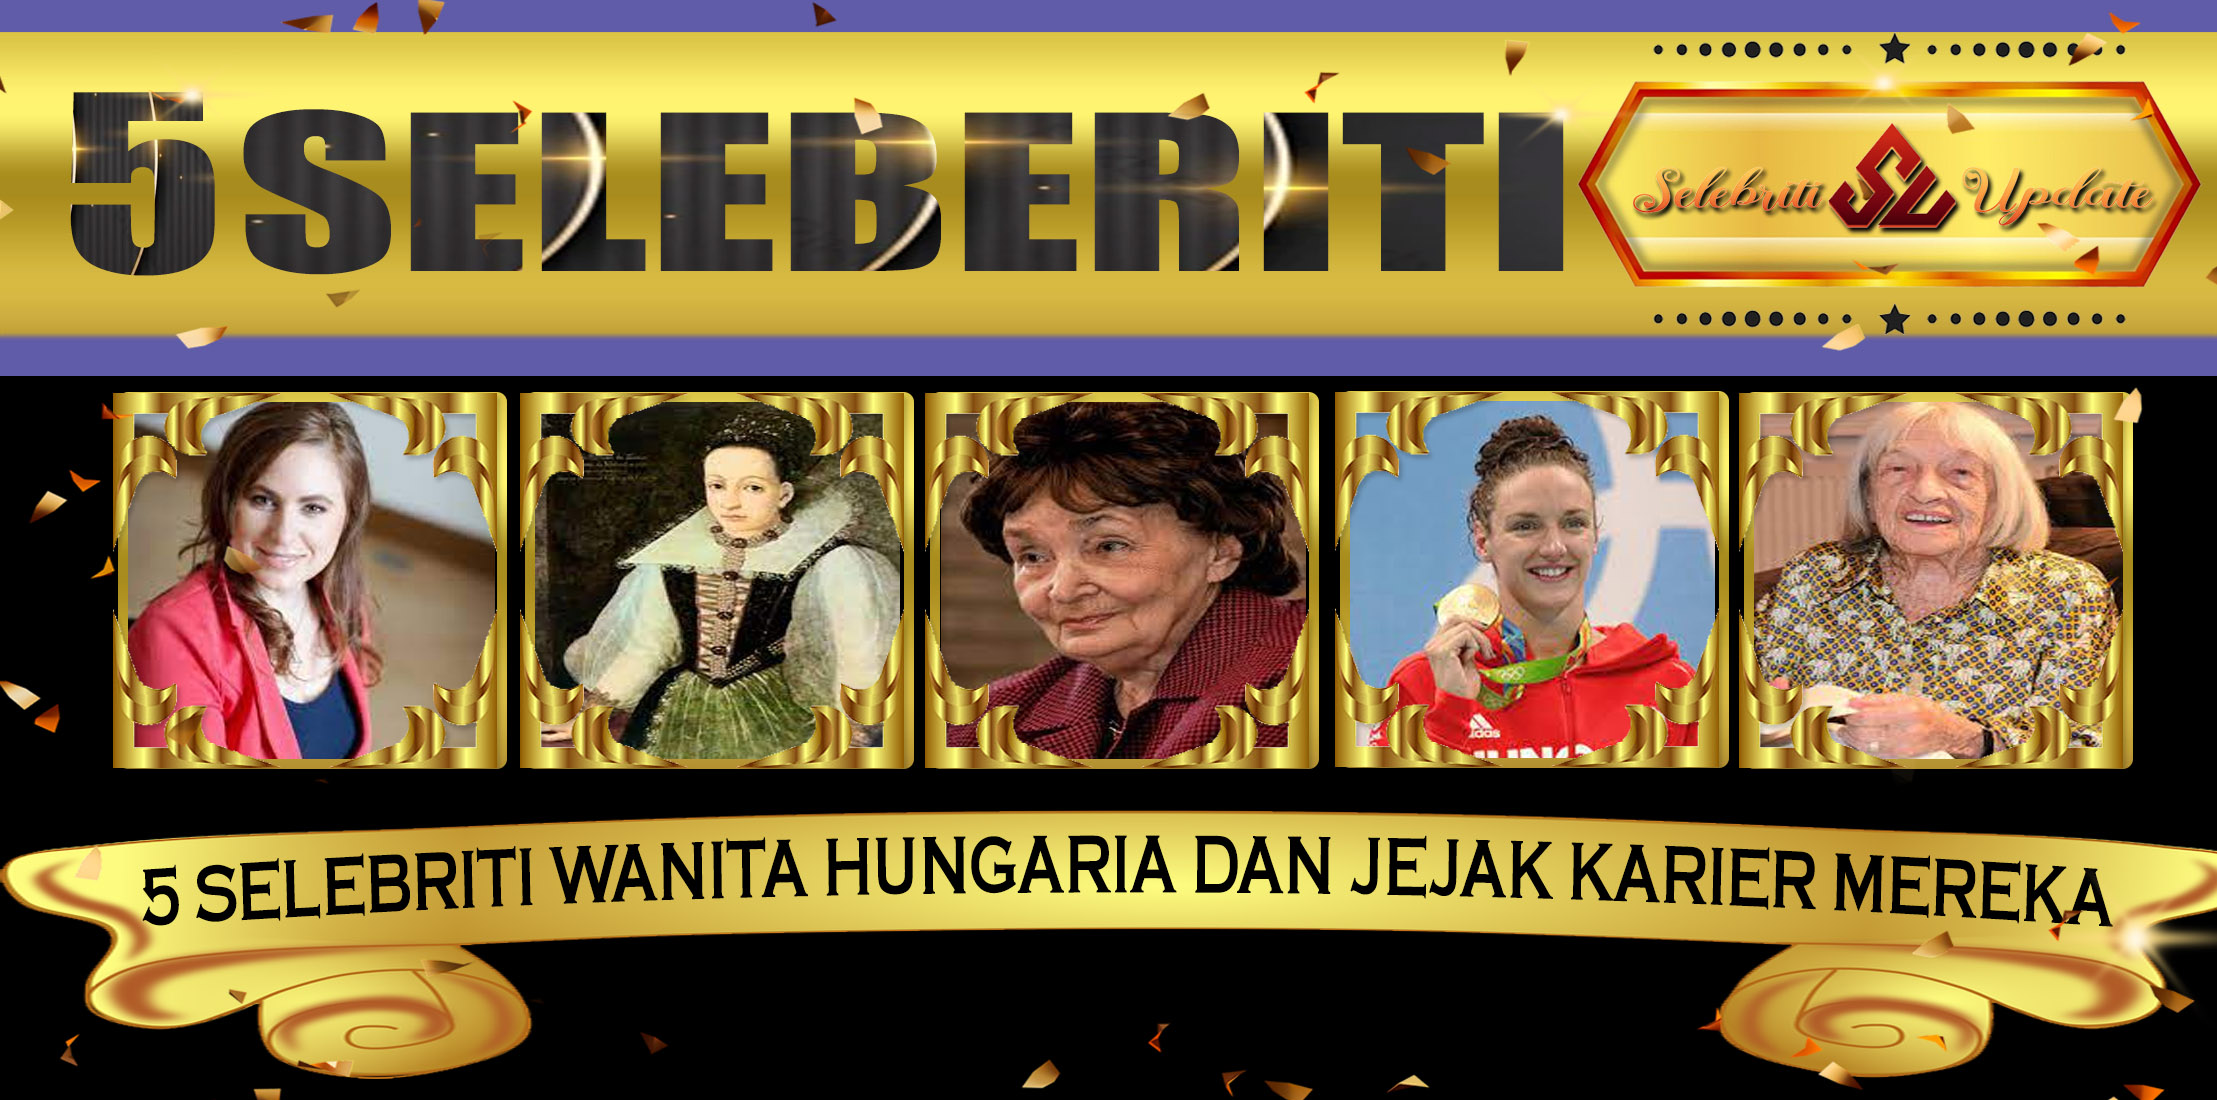 5 Selebriti Wanita Hungaria